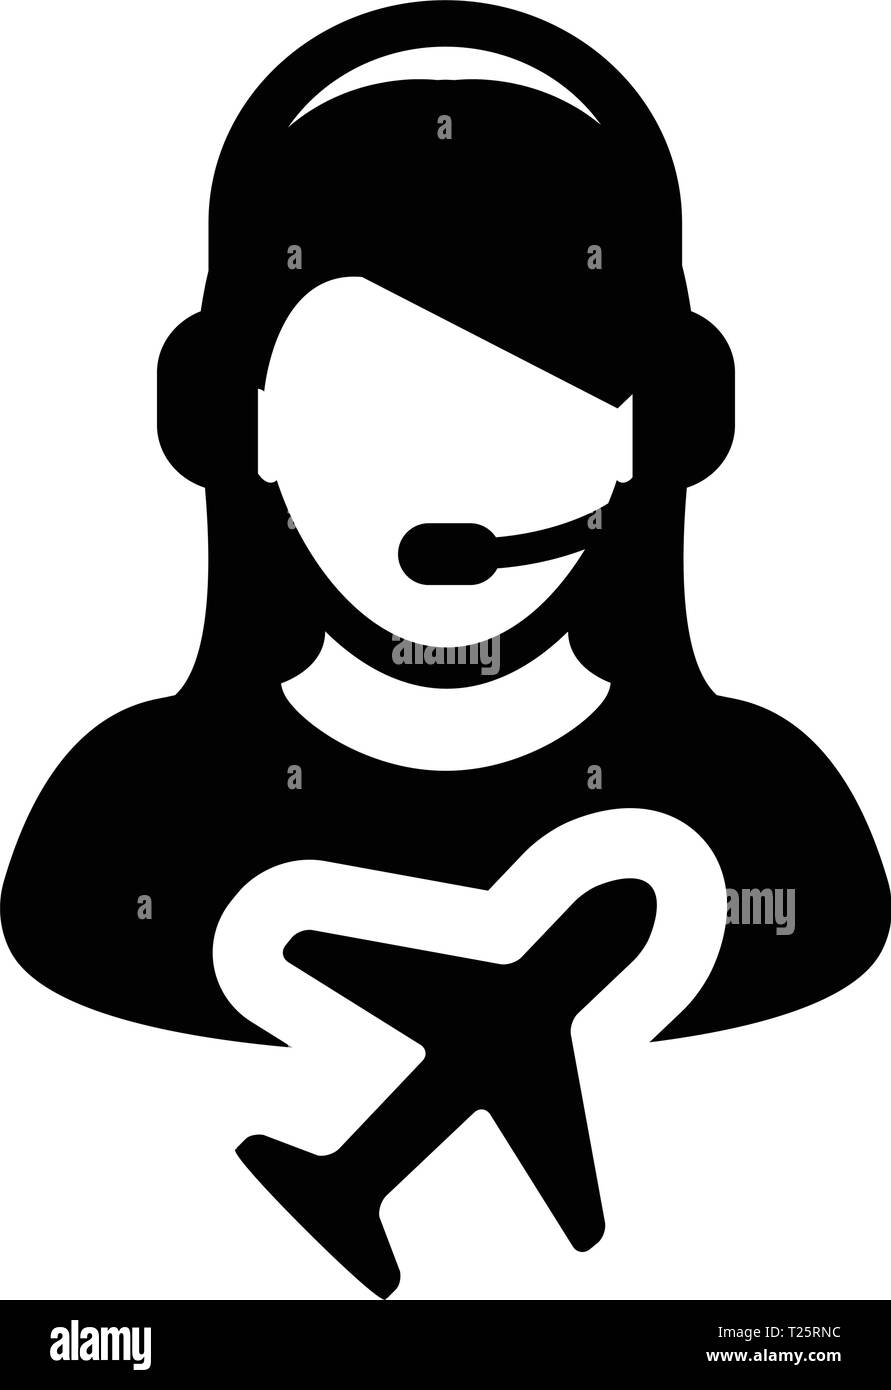 Flug Kundenservice Symbol Vektor weibliche Person Profil Symbol für Reise und Urlaub Support Helpline in Glyph Piktogramm Abbildung Stock Vektor